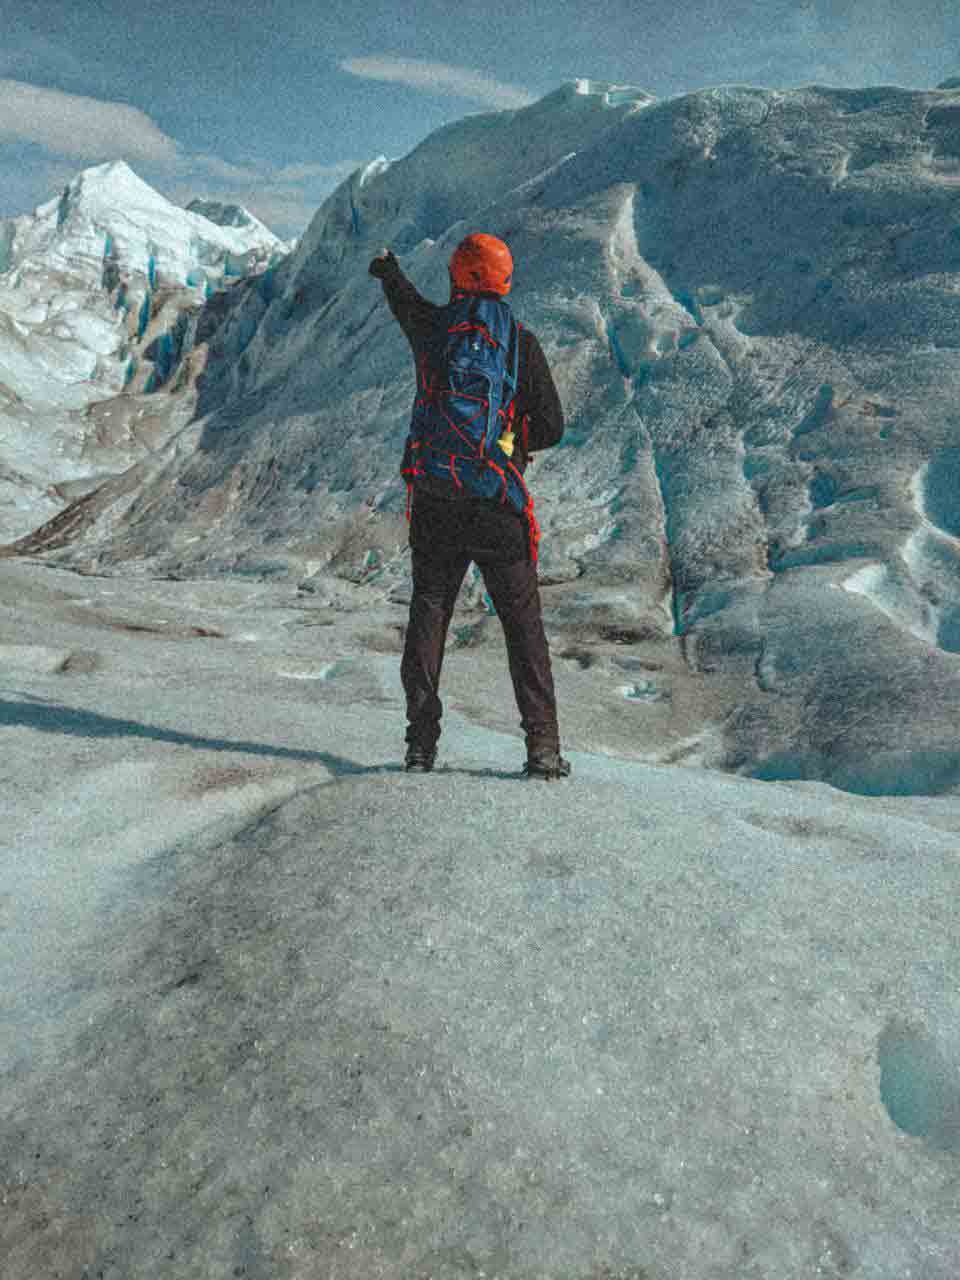 Abraham-con-casco-naranja-arriba-de-un-glaciar